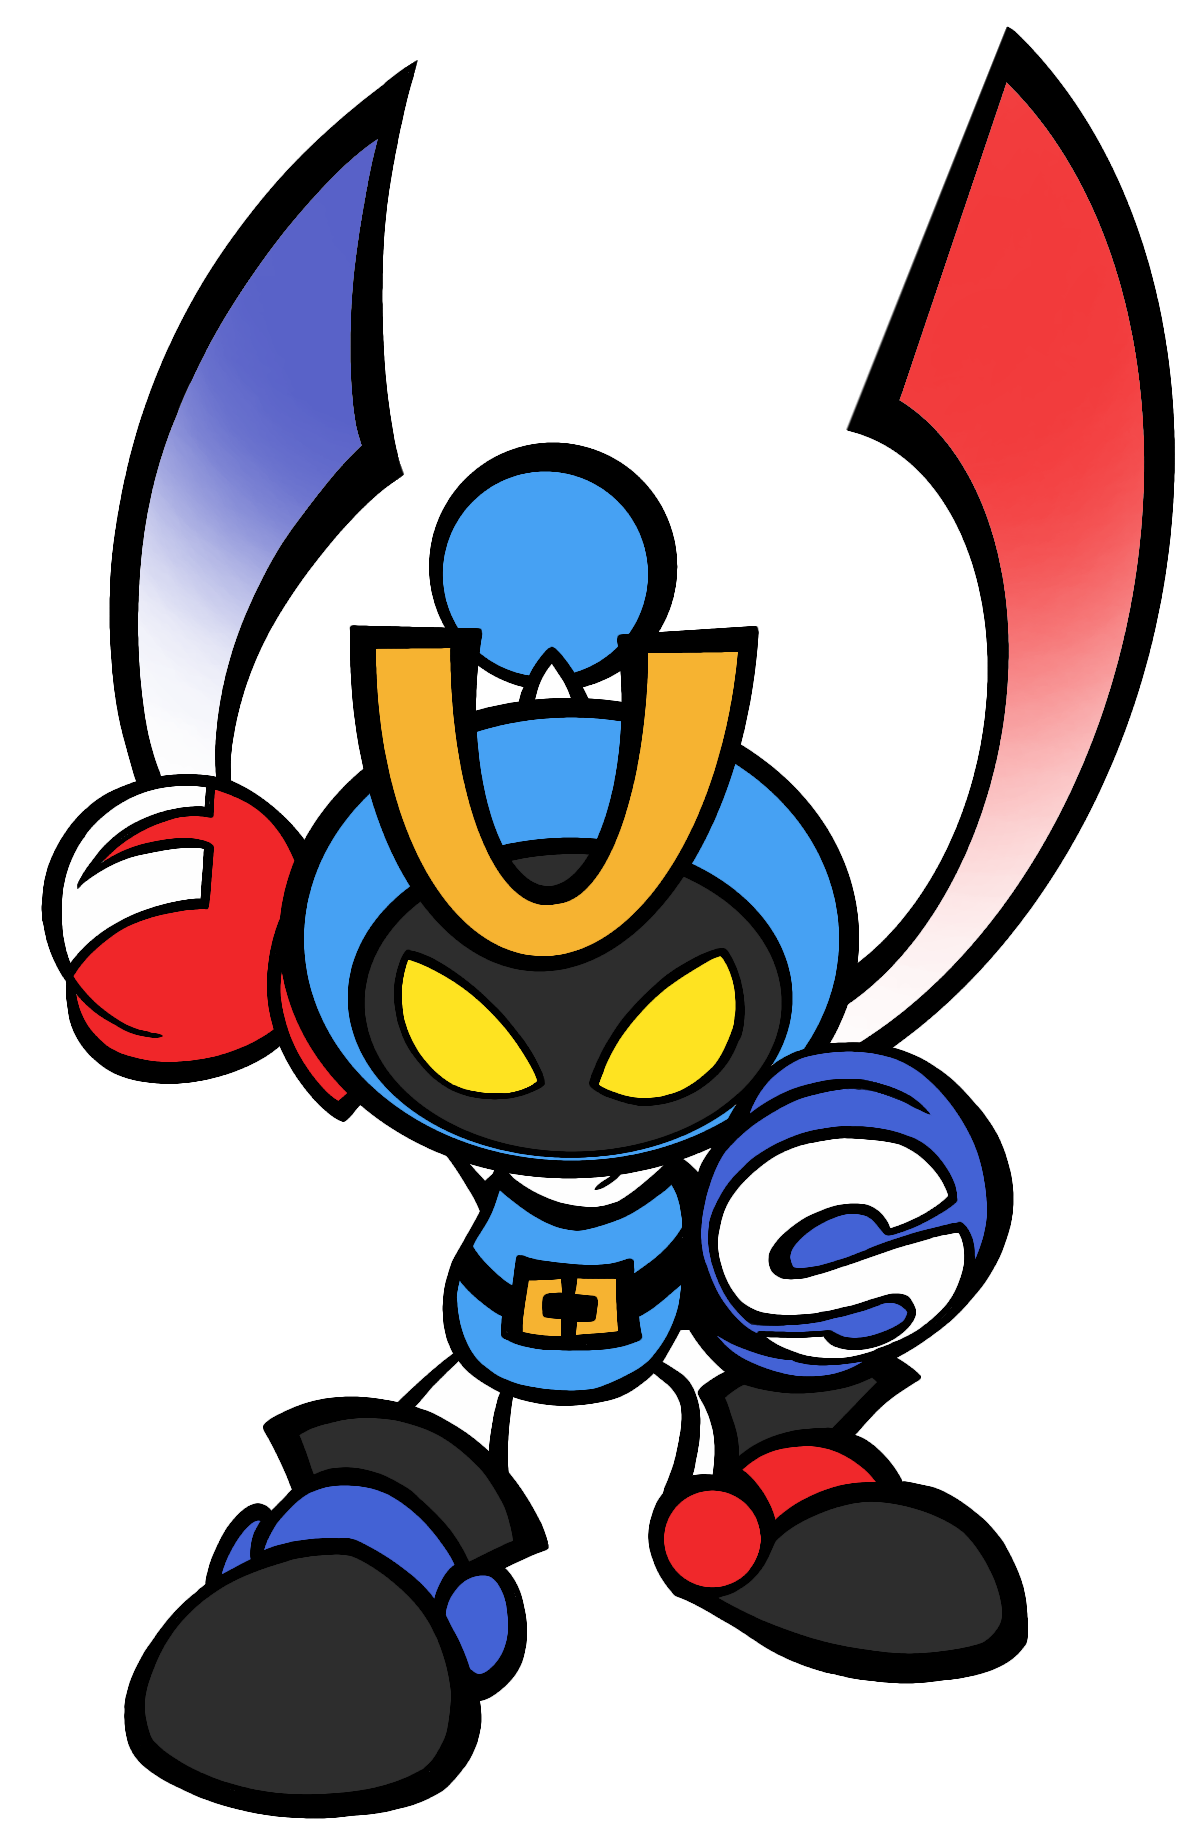 Bomberman - Wikipedia